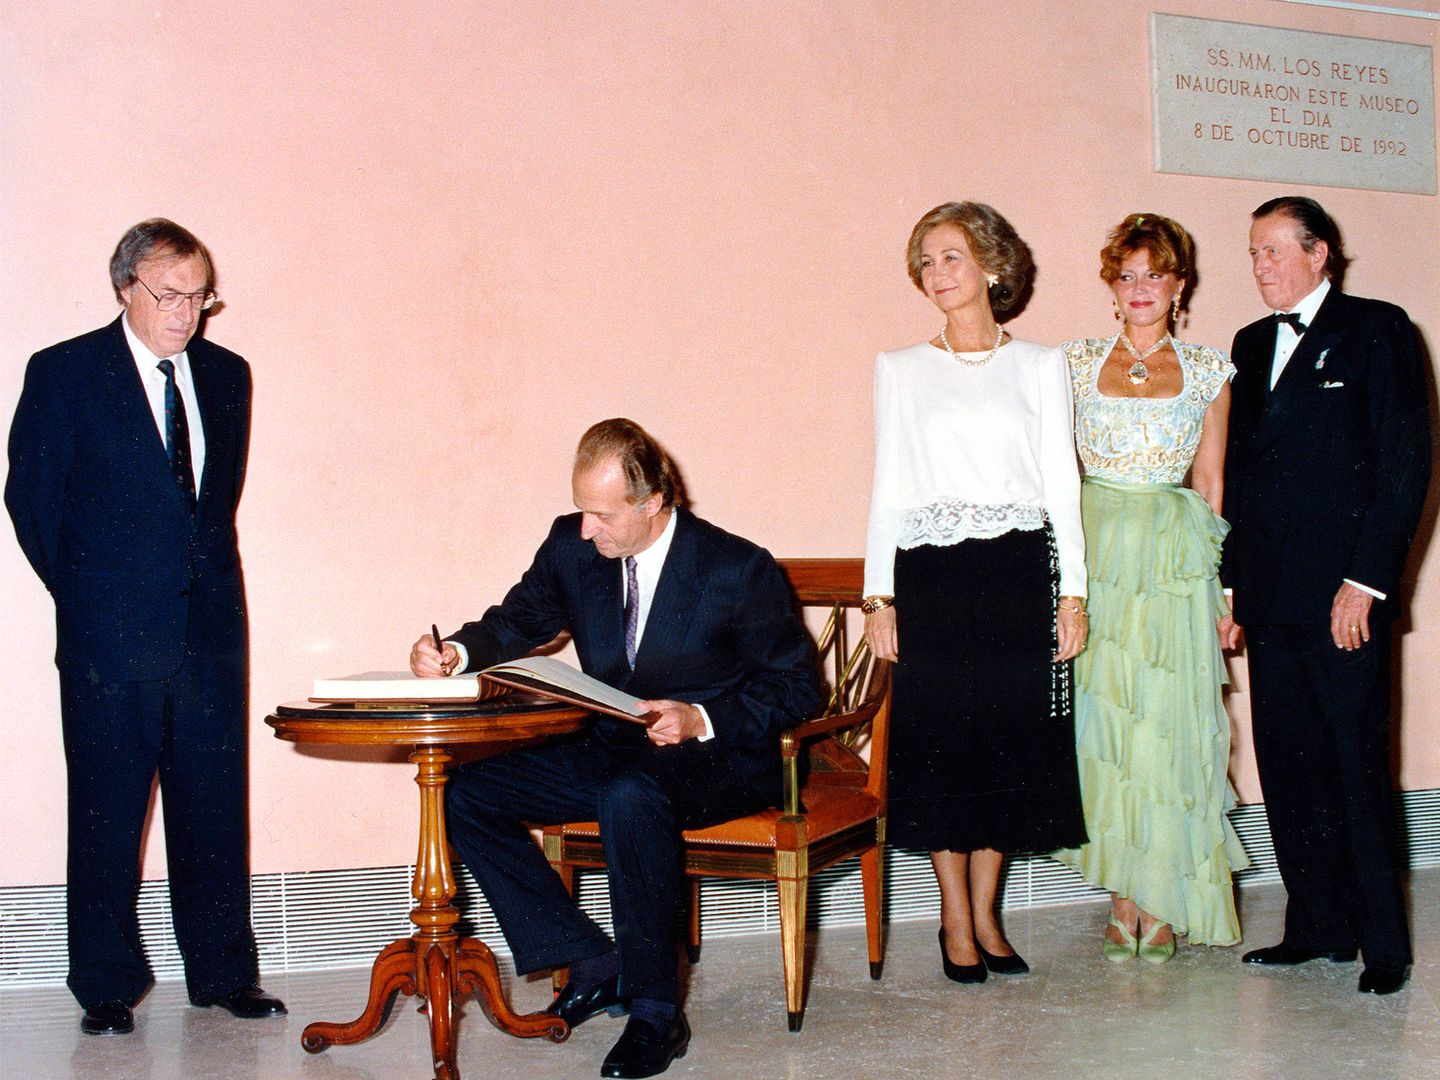  El rey Juan Carlos firma en el libro de visitas durante la inauguración del Thyssen, 8 de octubre de 1992 (Archivo fotográfico baronesa Thyssen-Bornemisza)